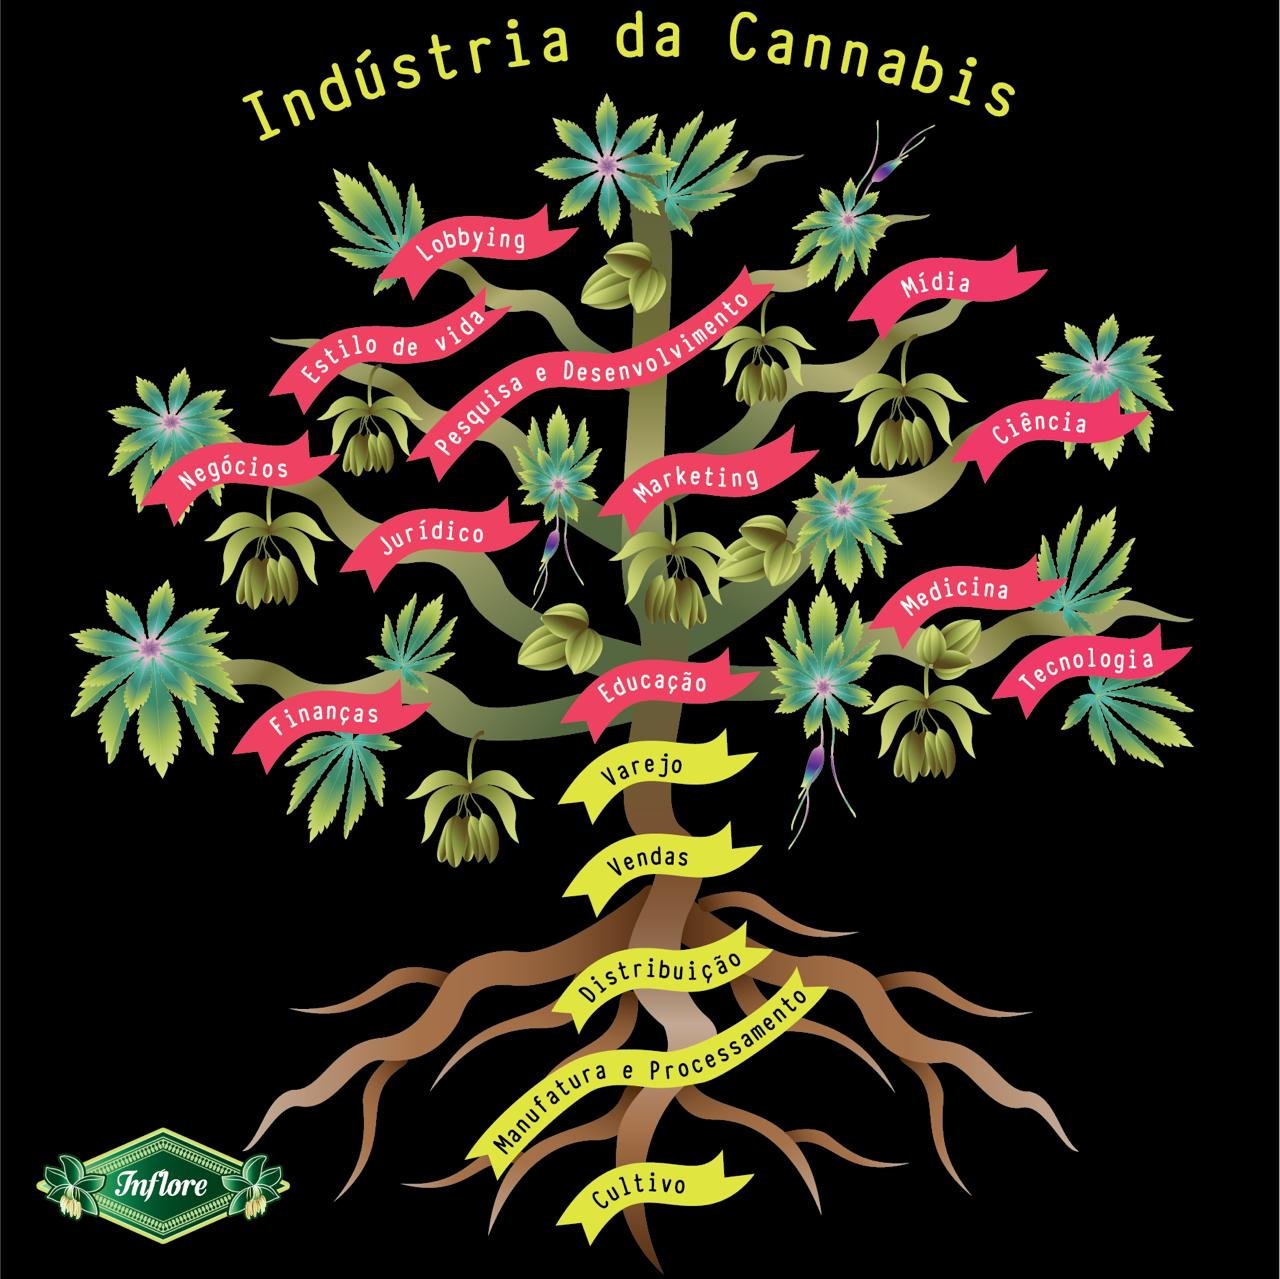 Ilustração de uma arvore fazendo analogia á estrutura da indústria da cannabis